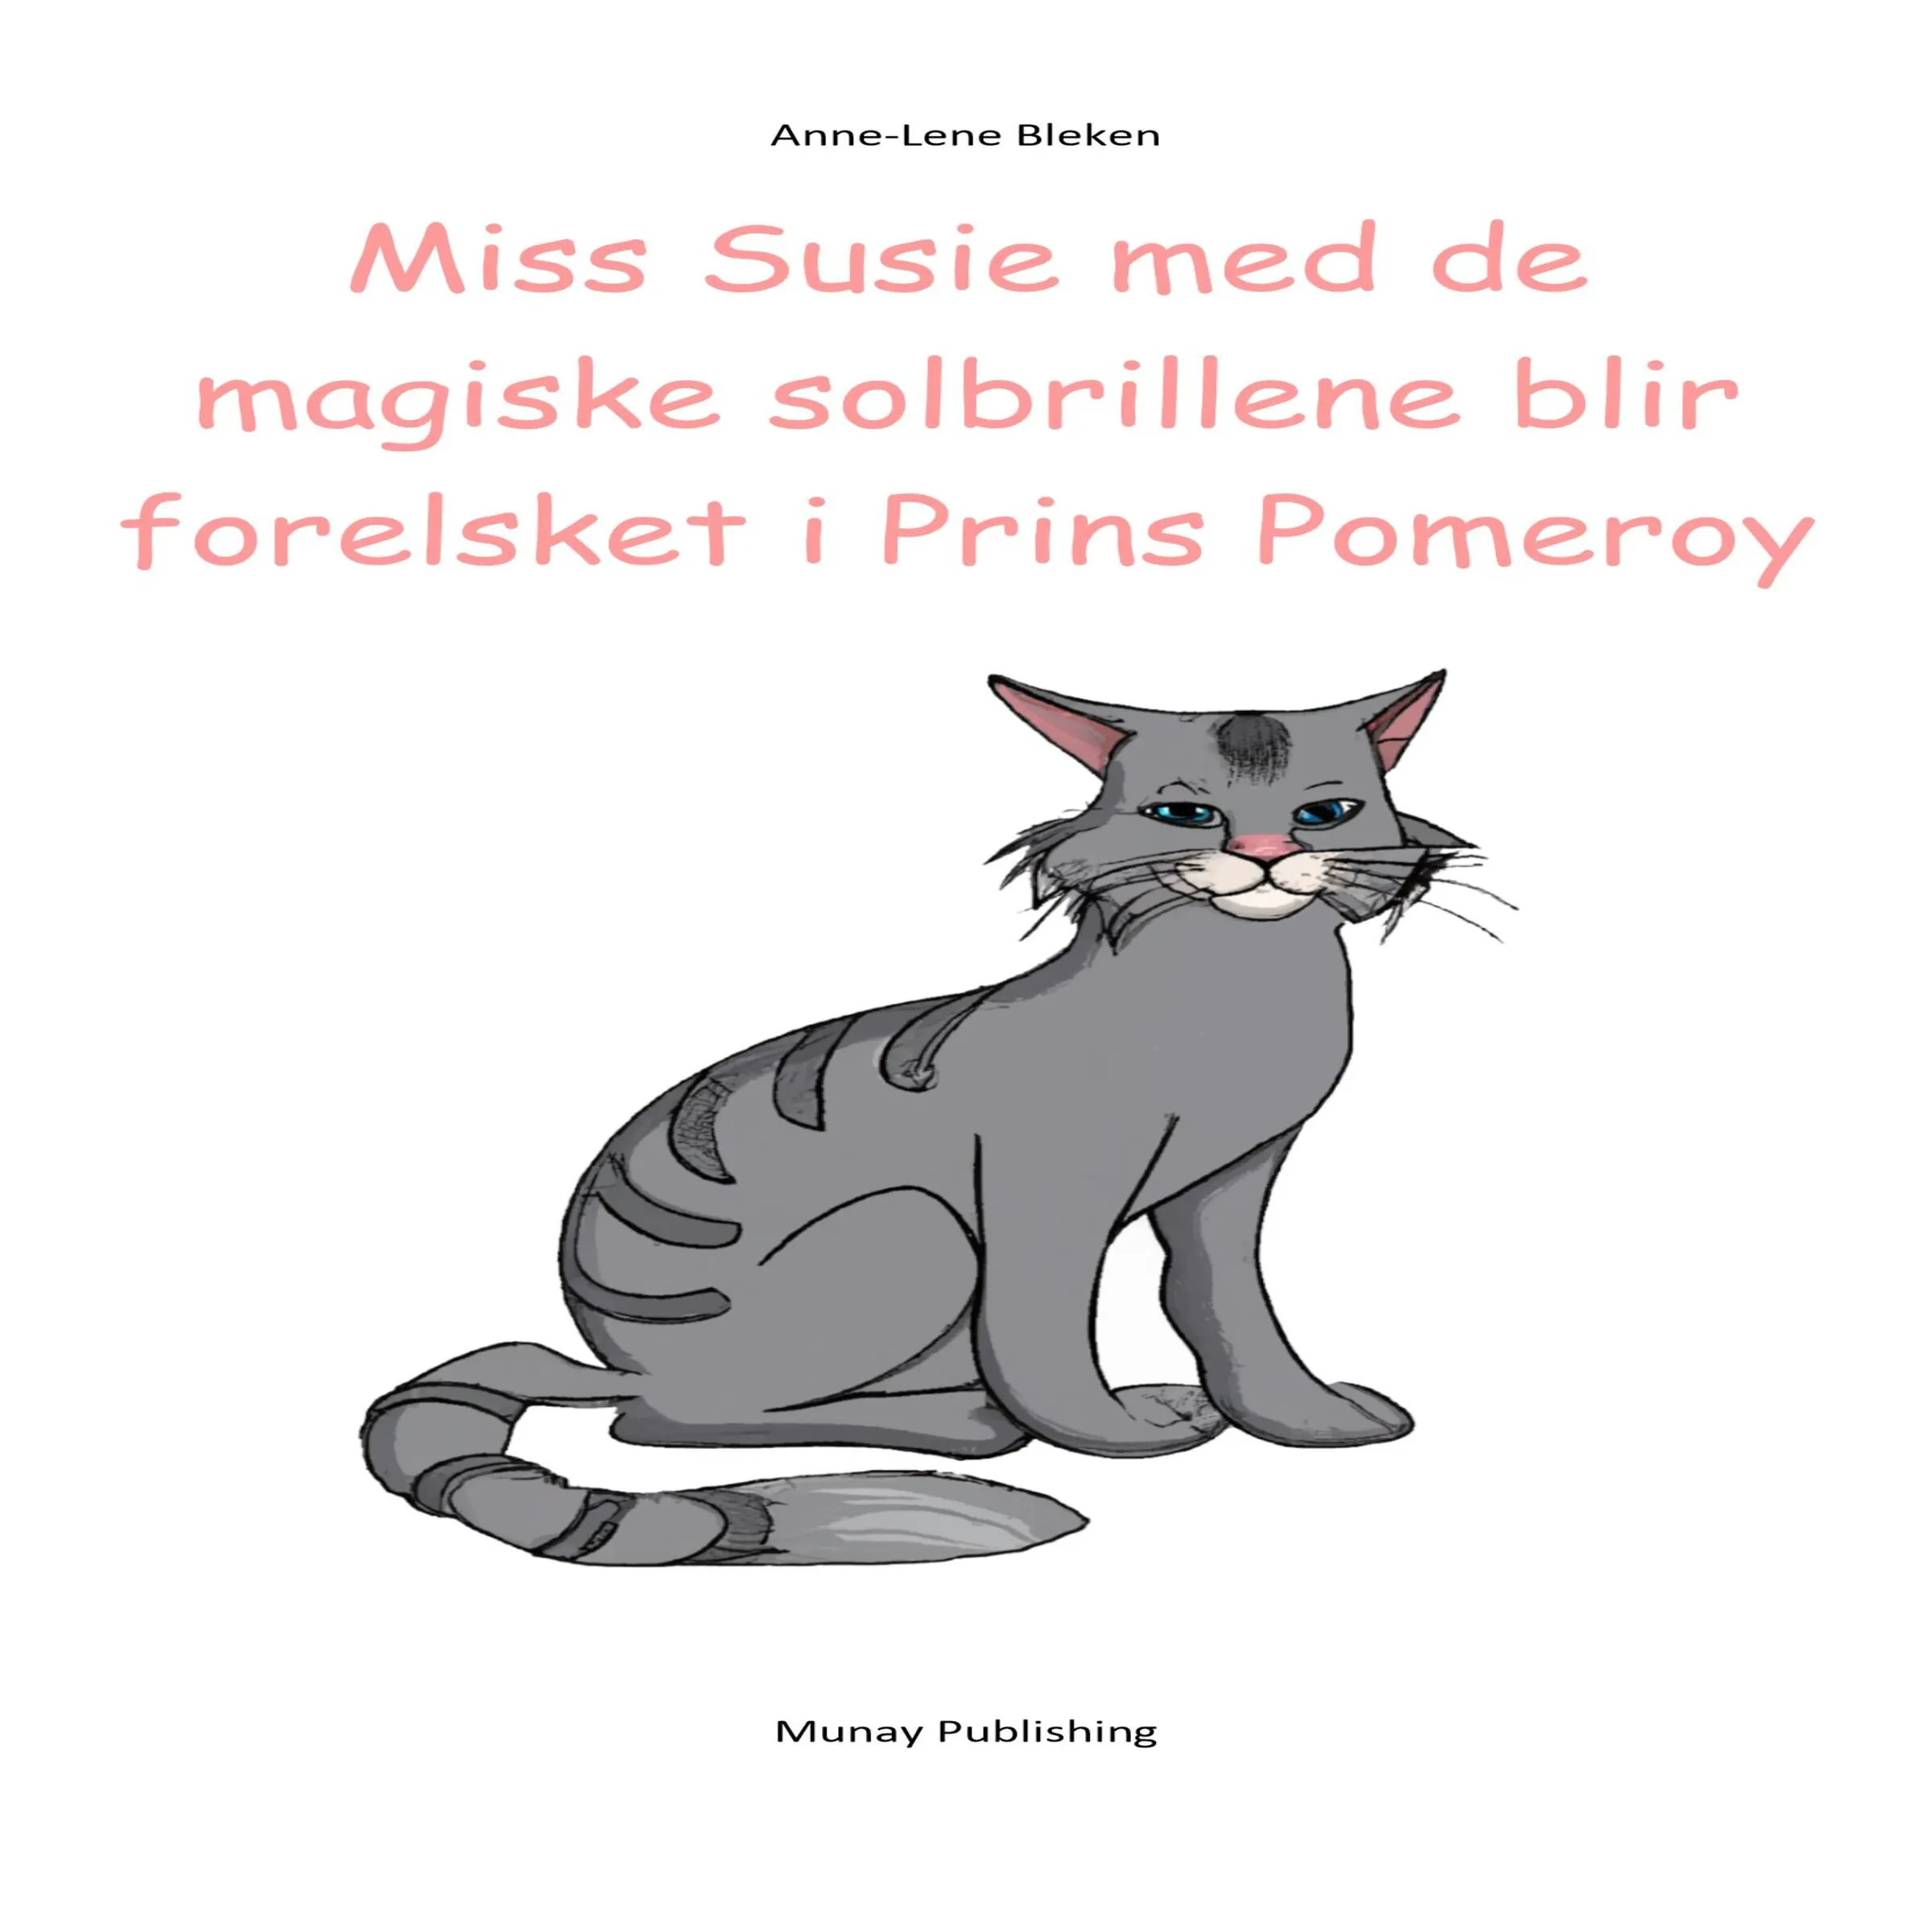 Miss Susie med de magiske solbrillene blir forelsket i Prins Pomeroy Audiobook by Anne-Lene Bleken